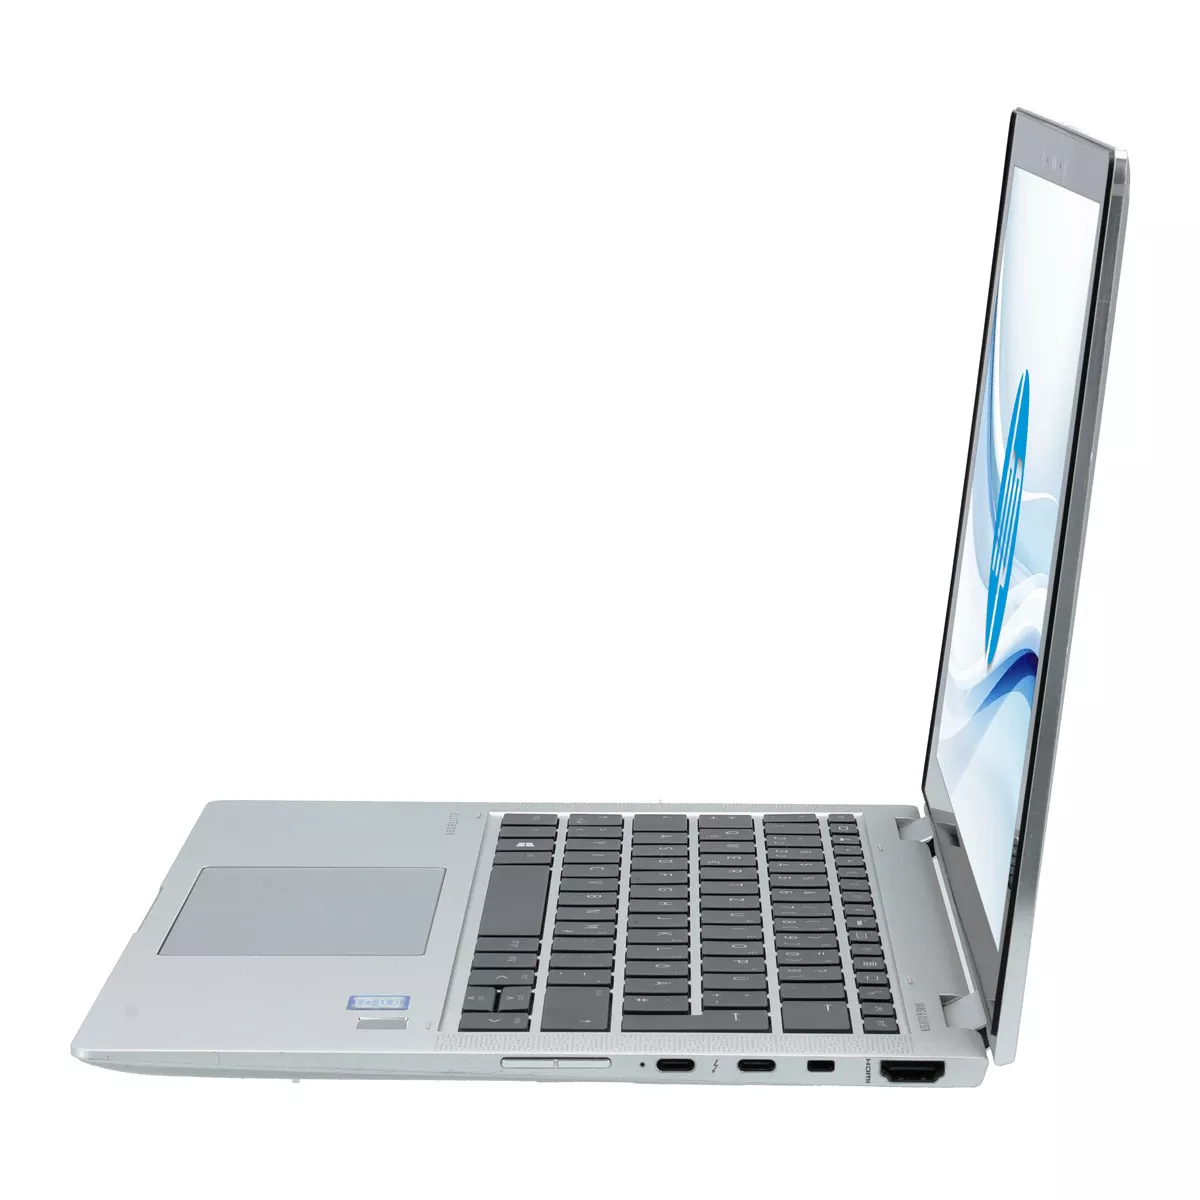 HP EliteBook x360 1030 G4 Core i7 8665U Full-HD Touch 16 GB 500 GB M.2 nVME SSD Webcam A